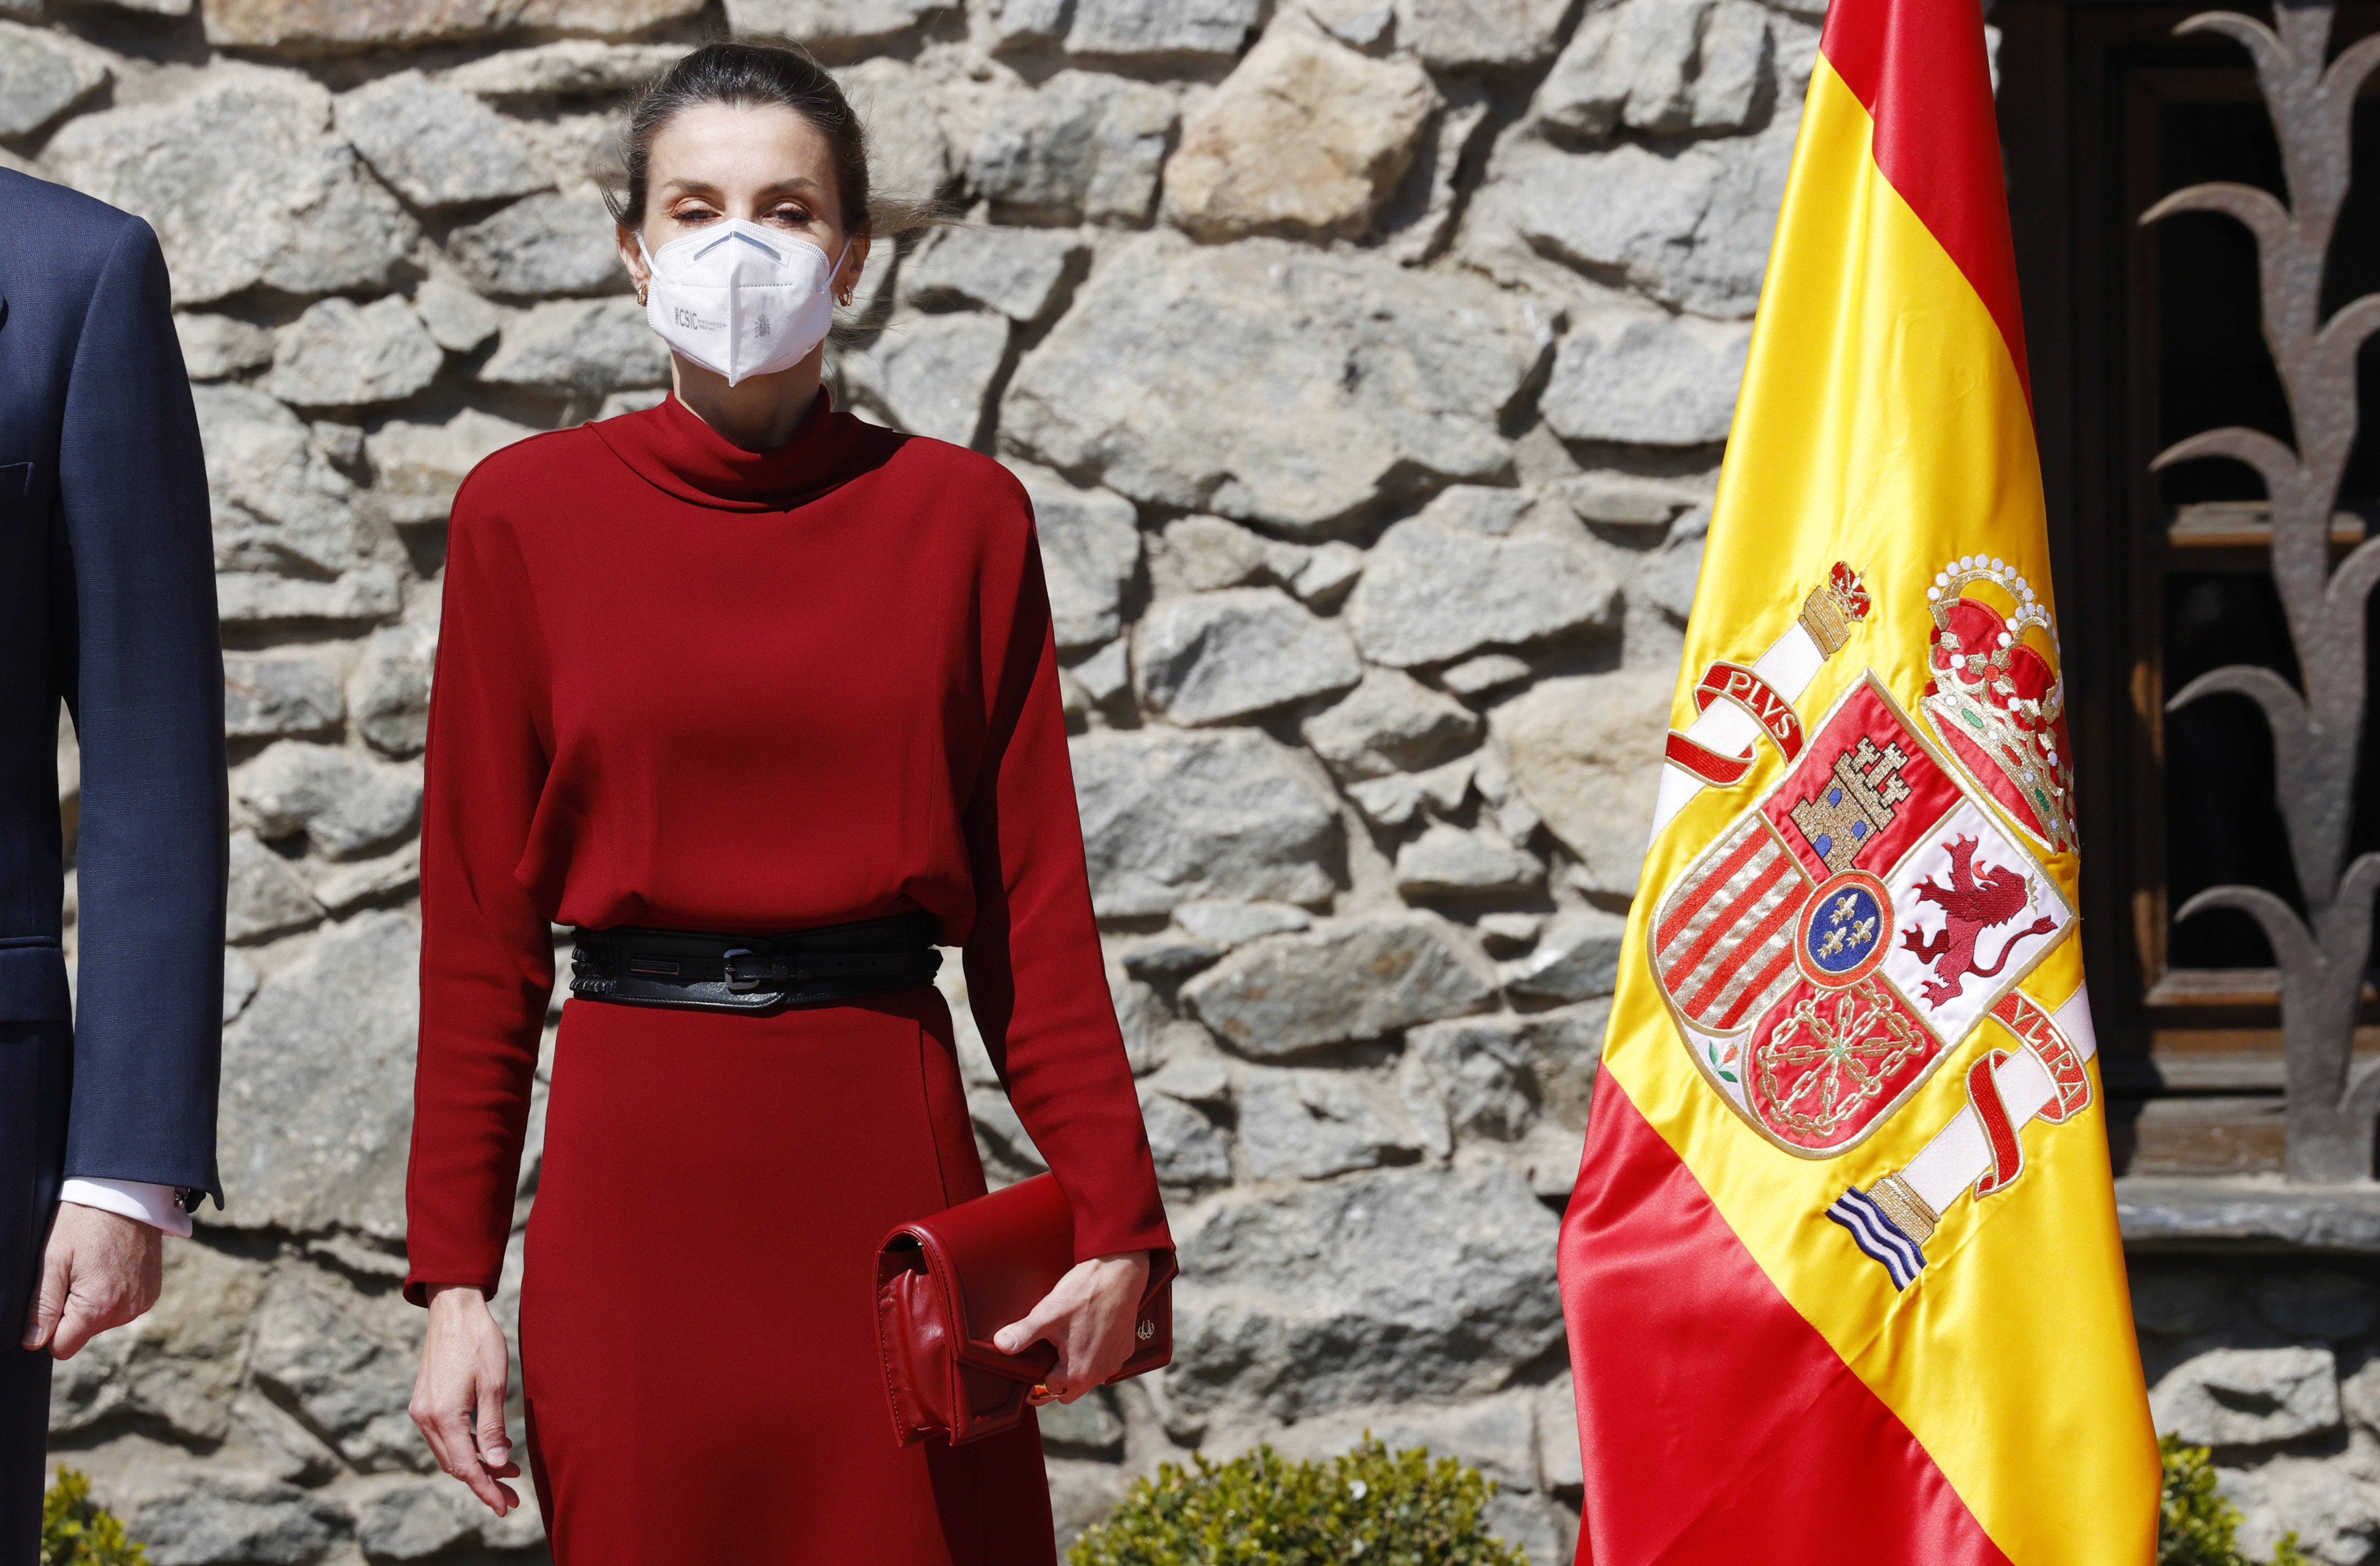 Ensurt de Letícia quan se li obre el vestit en sonar l'himne espanyol a Andorra